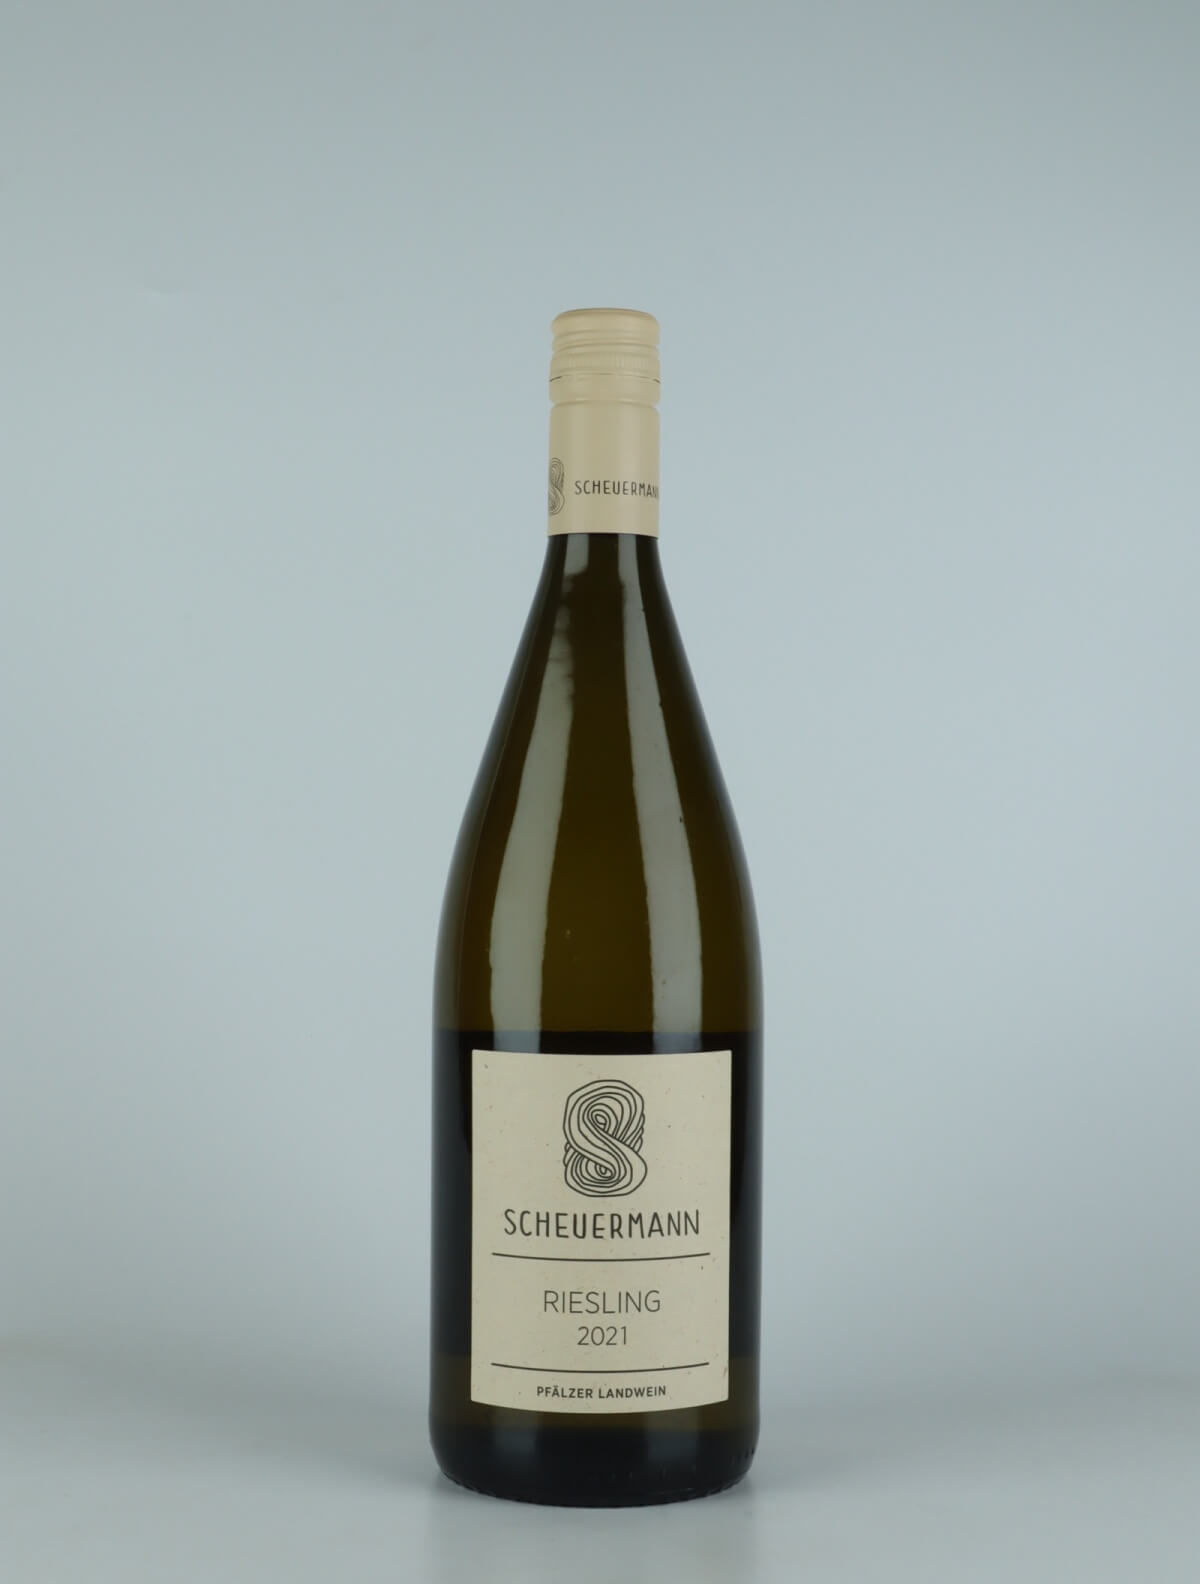 A bottle 2021 Riesling Trocken Liter White wine from Weingut Scheuermann, Pfalz in Germany